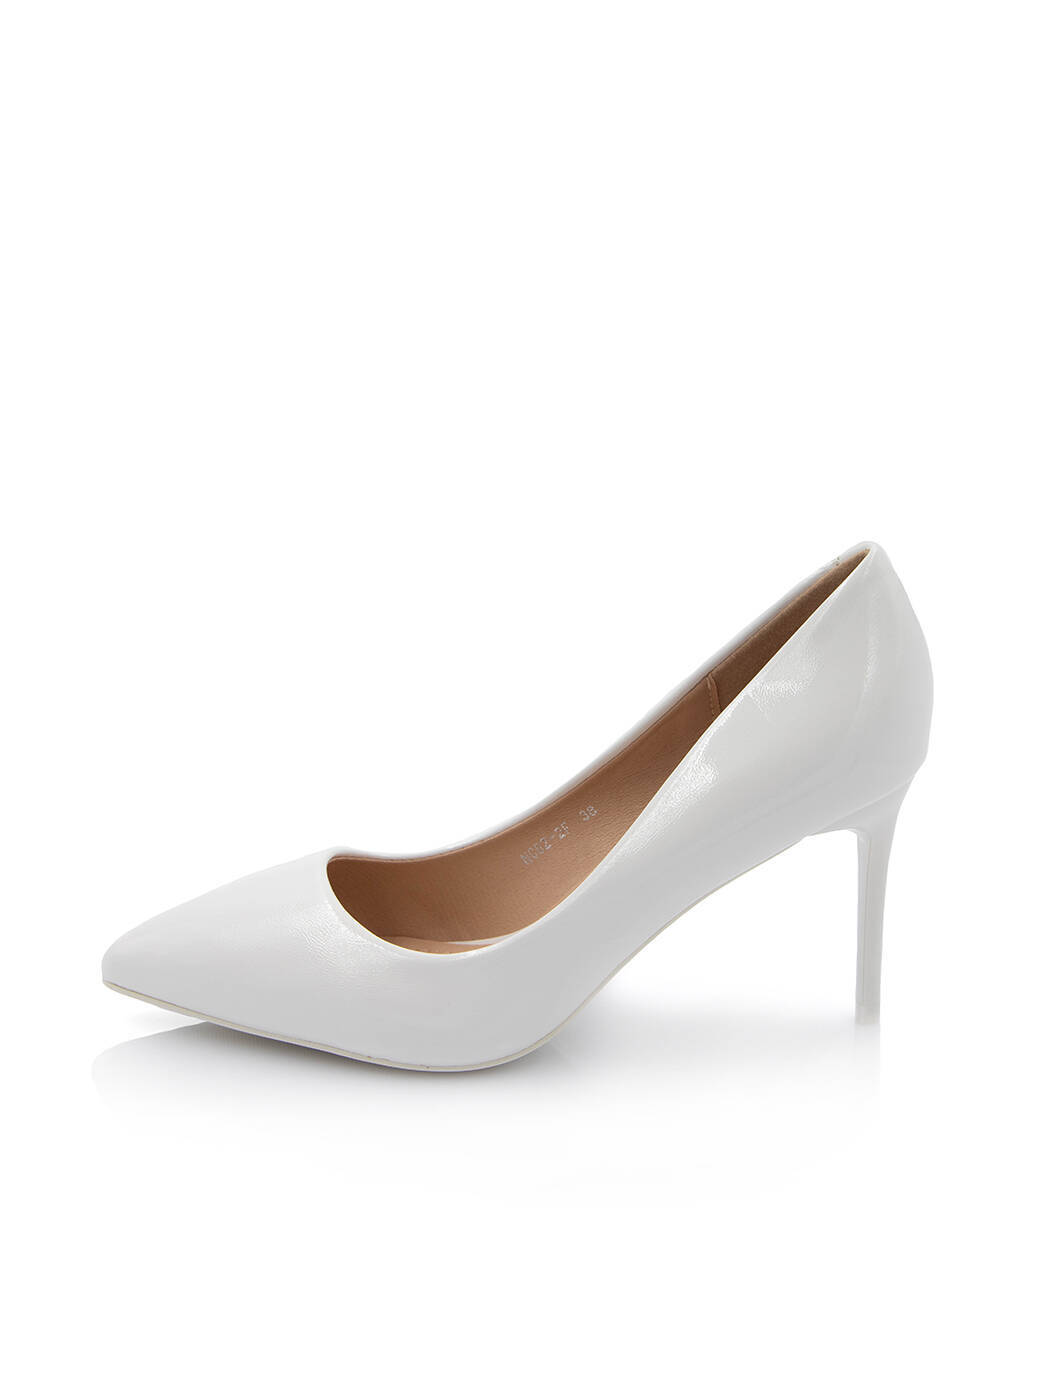 Туфлі жіночі білі штучний лак каблук шпилька демісезон від виробника FM